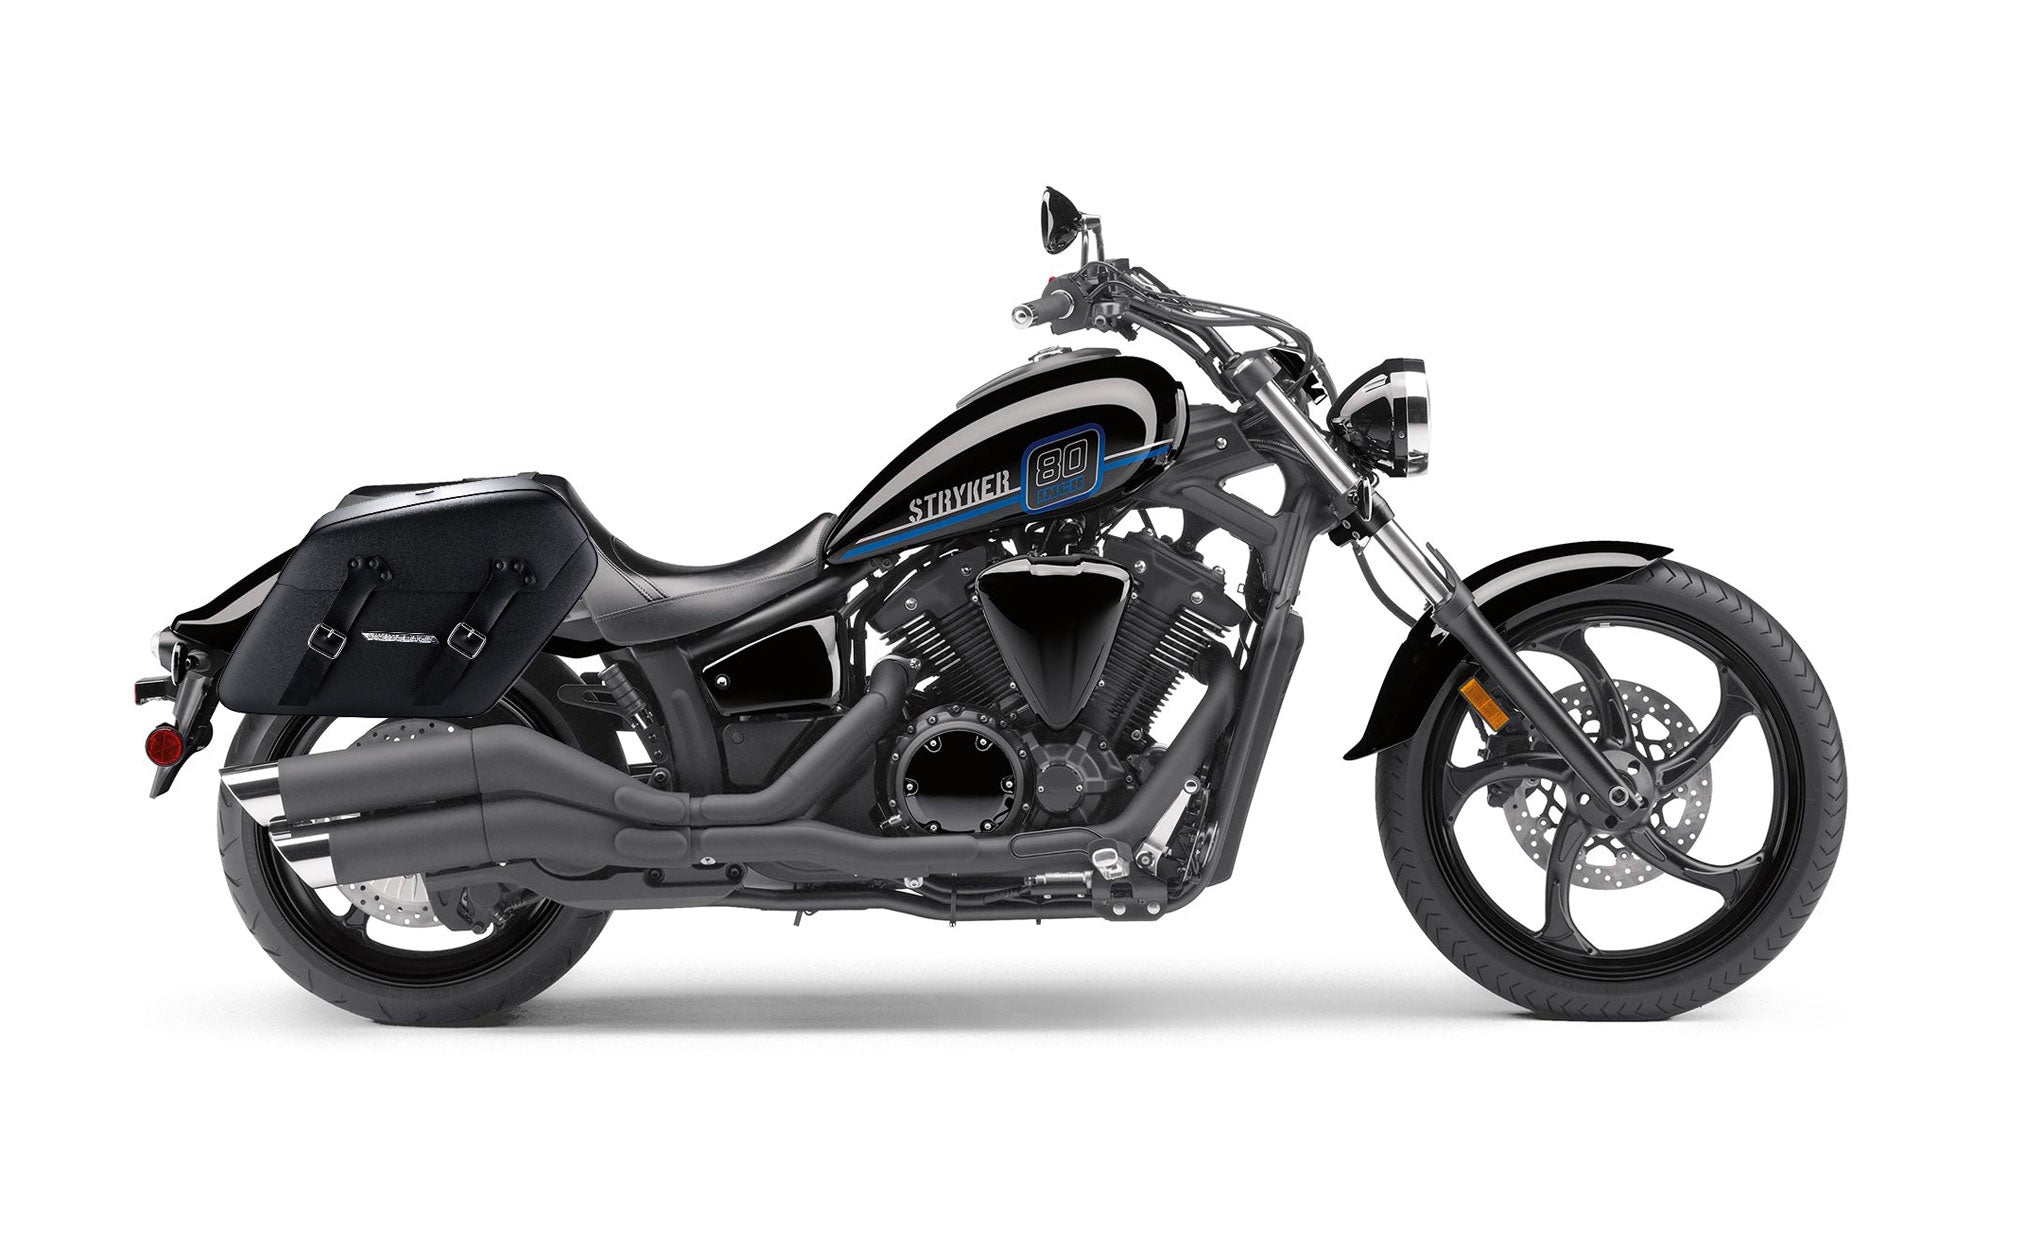 Viking Baldur Extra Large Yamaha Stryker Leather Wrapped Motorcycle Hard Saddlebags on Bike Photo @expand